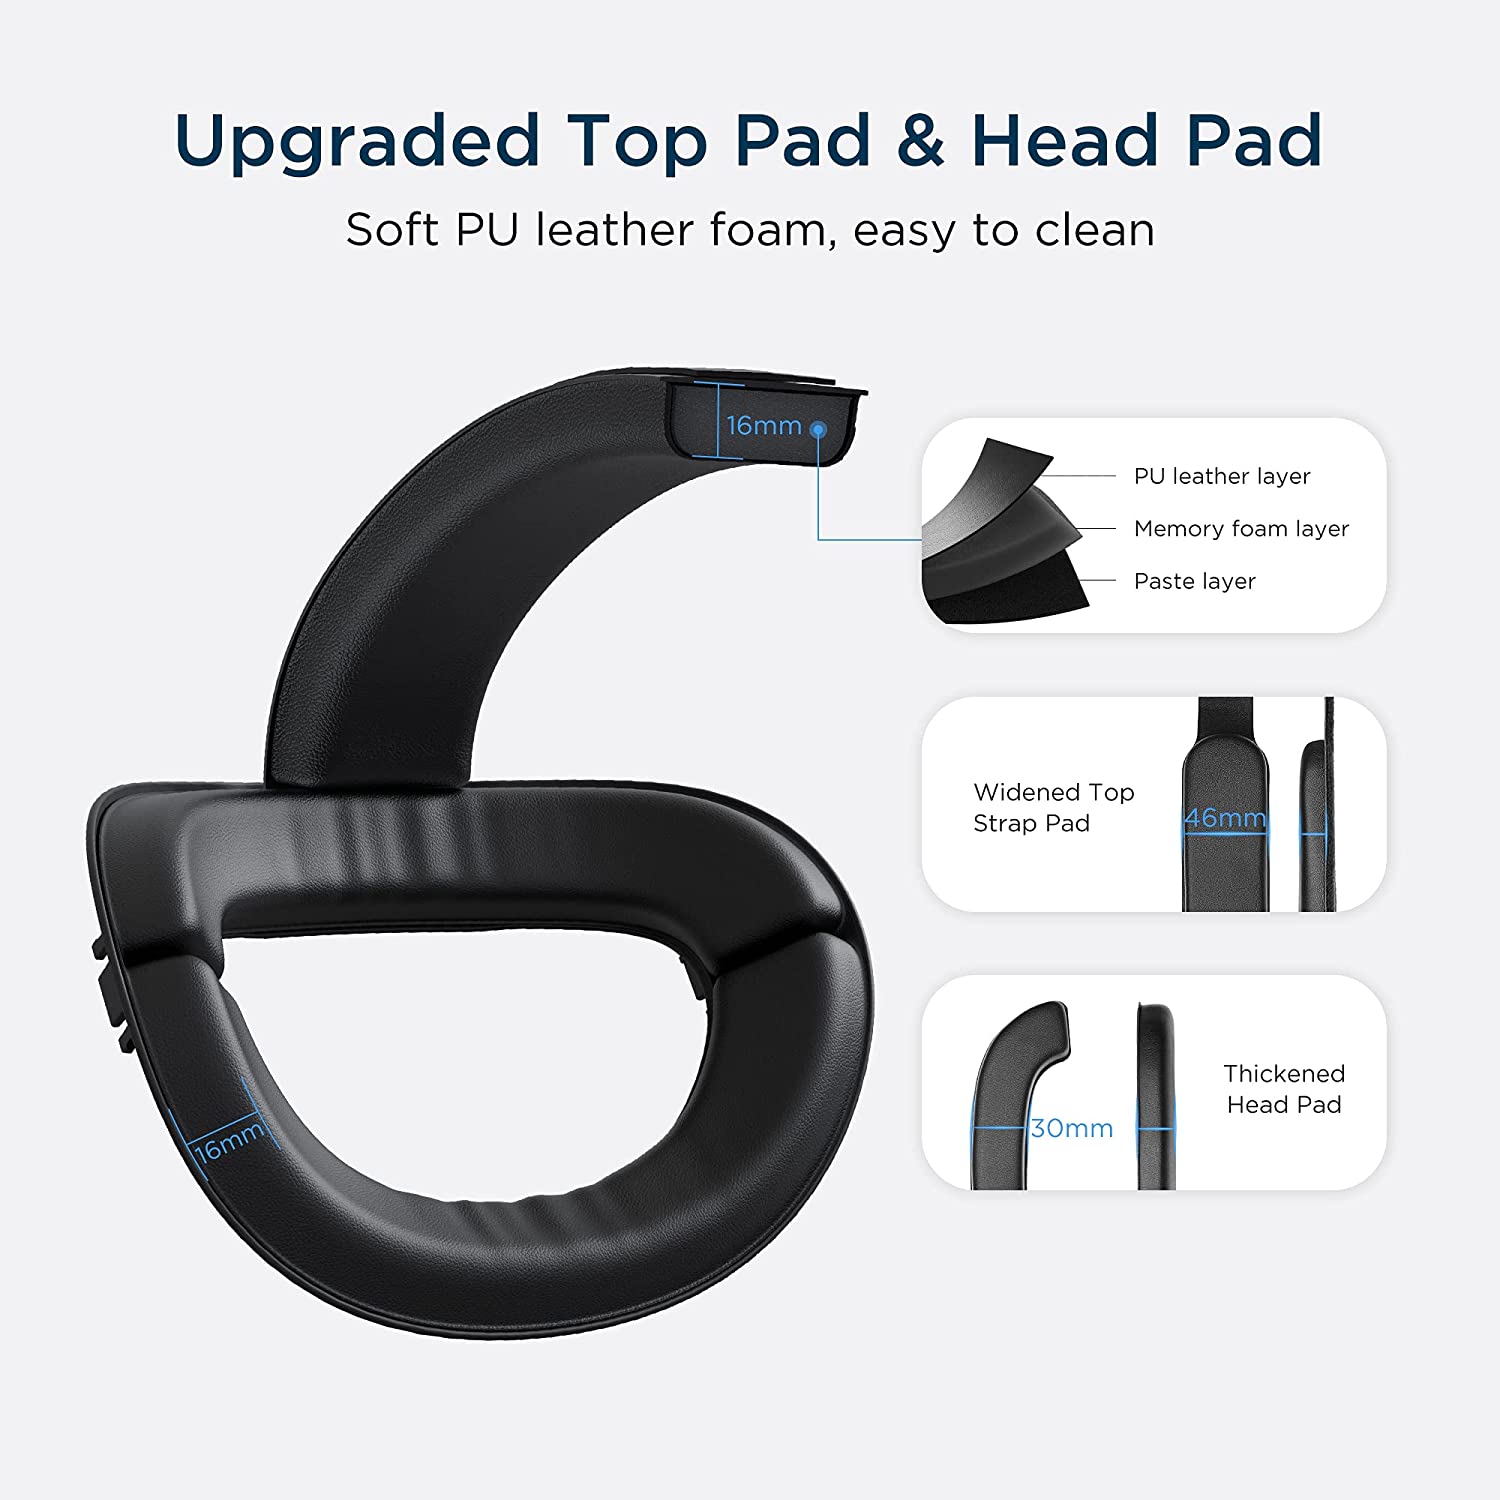 هد بند هدست واقعیت مجازی KIWI design Upgraded Head Strap - ارسال ۱۰ الی ۱۵ روز کاری